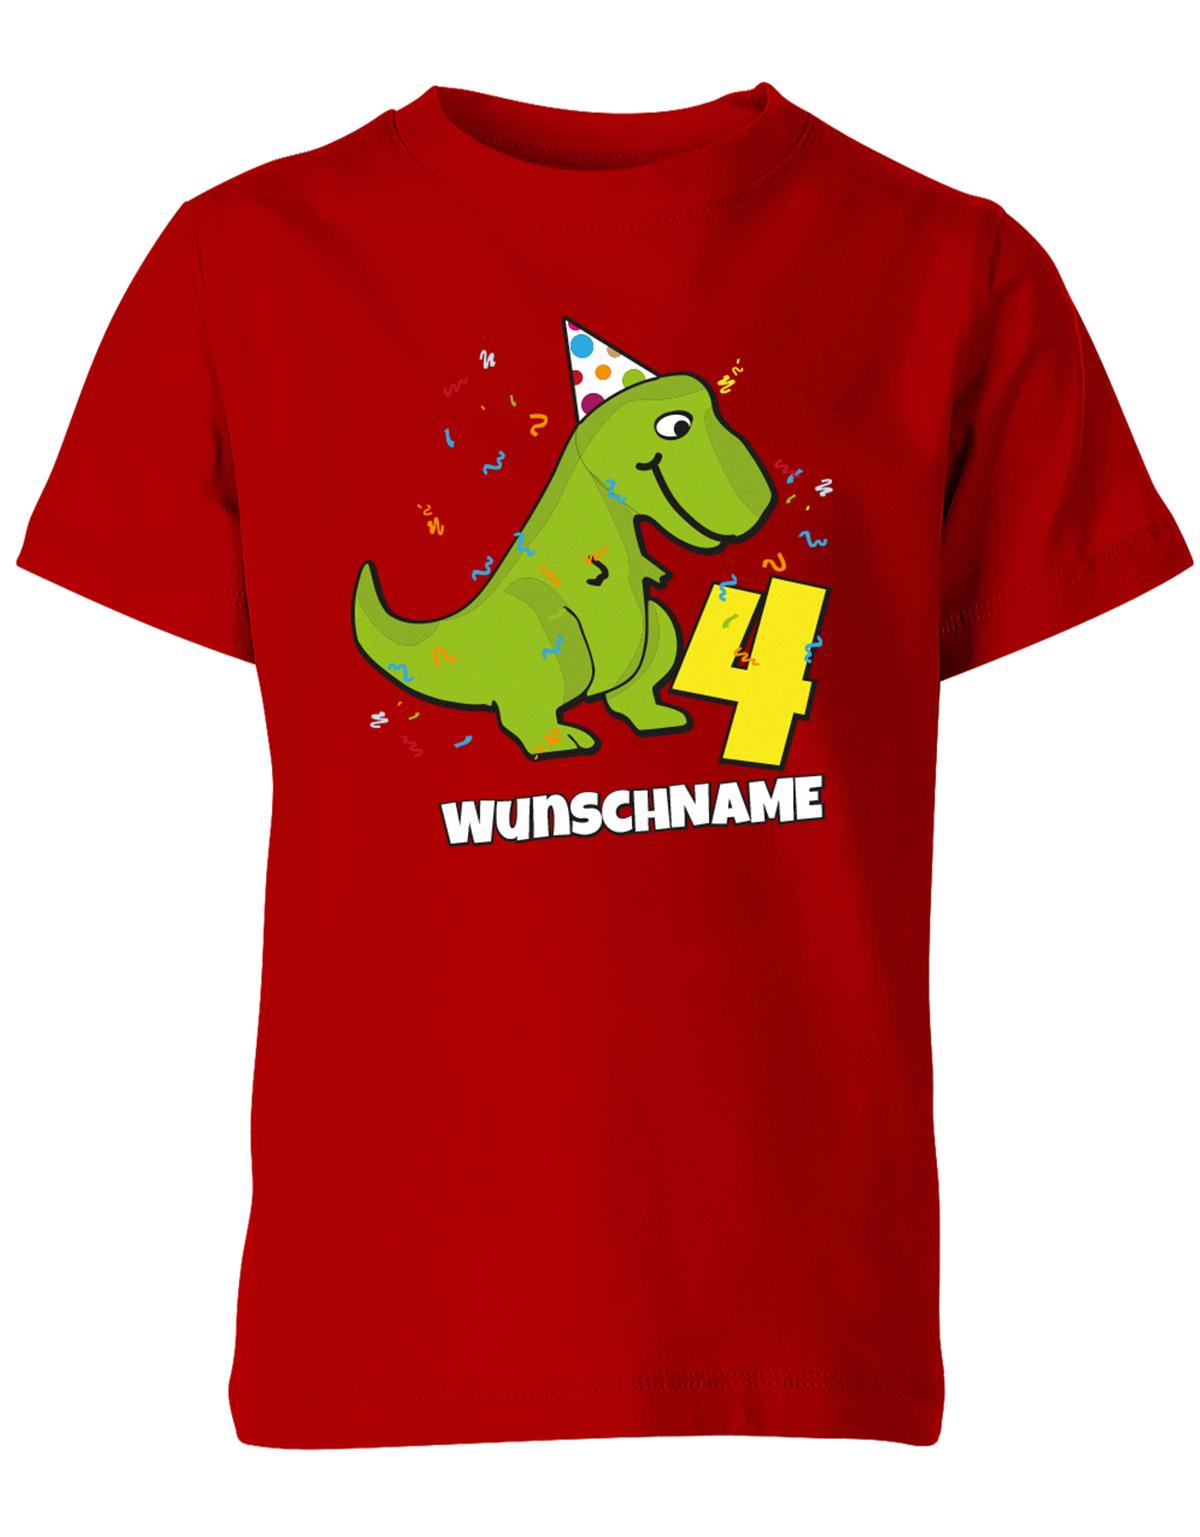 ich-bin-4-Dinosaurier-t-rex-wunschname-geburtstag-kinder-shirt-rot